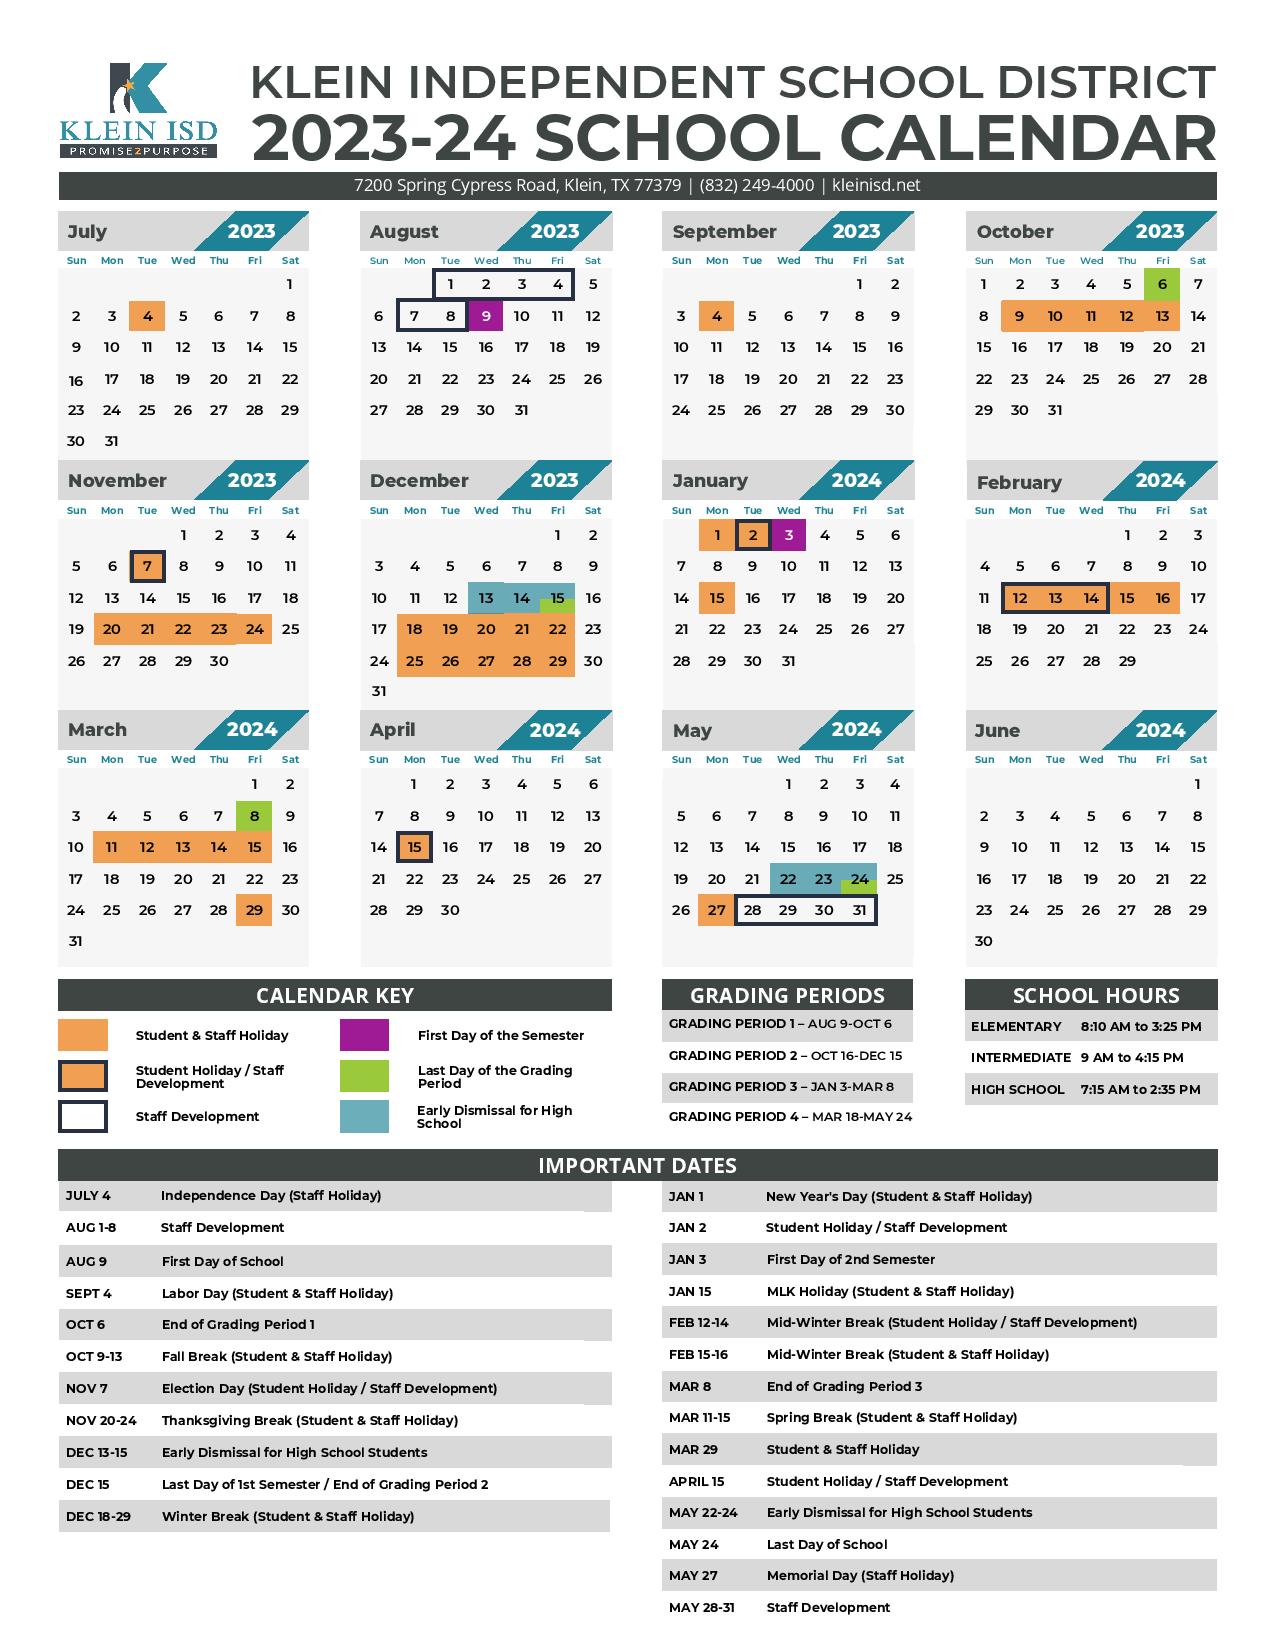 Klein Independent School District Calendar 2023 2024 PDF